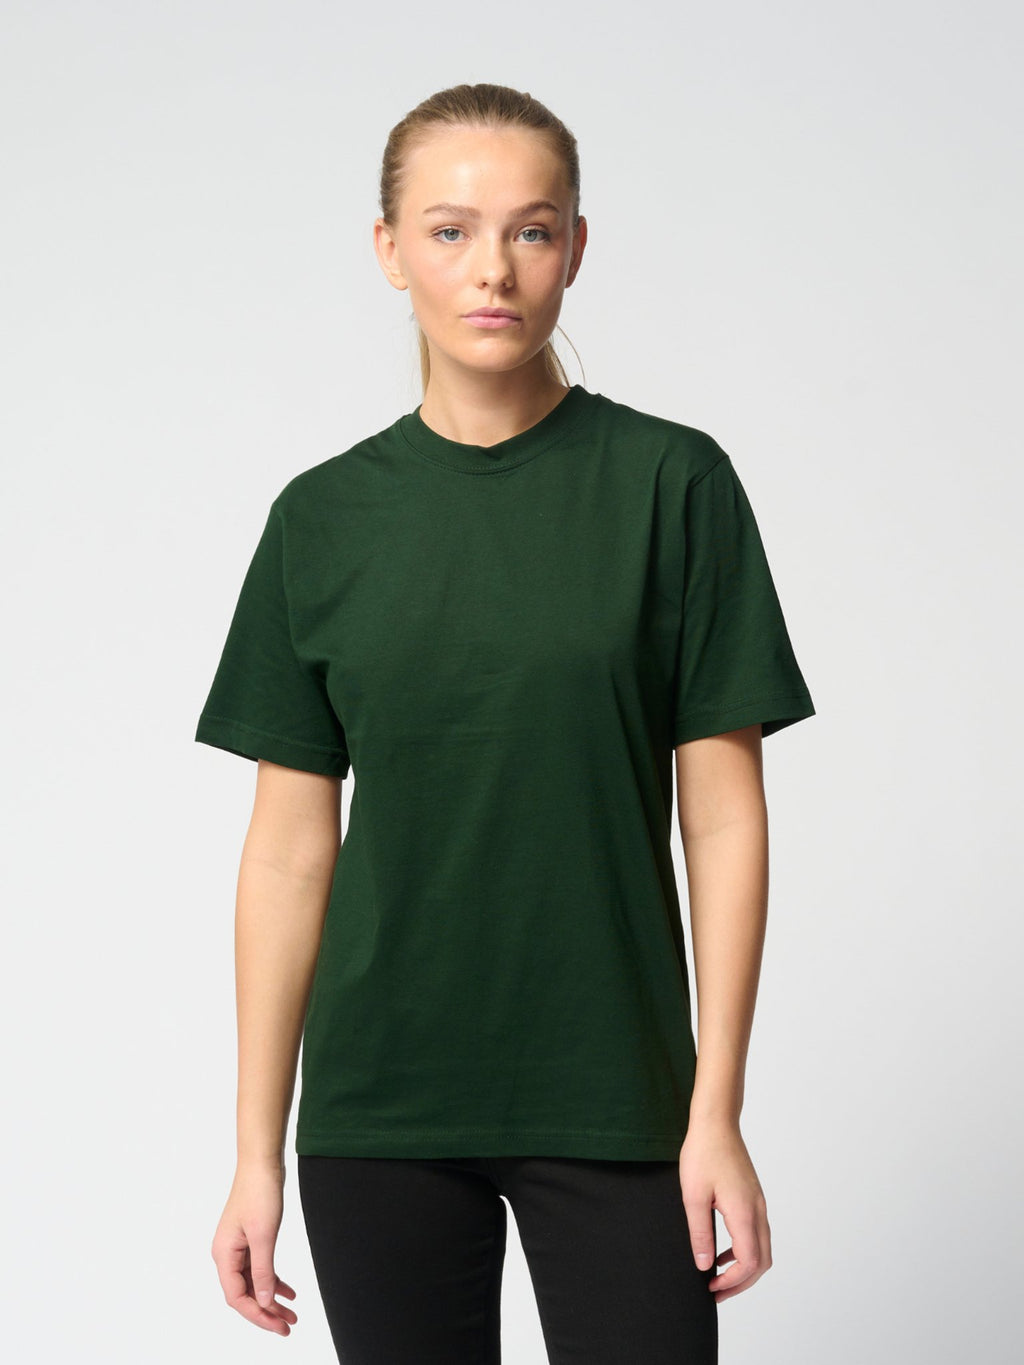 Camiseta de gran tamaño - Paquete para mujer (9 uds.)